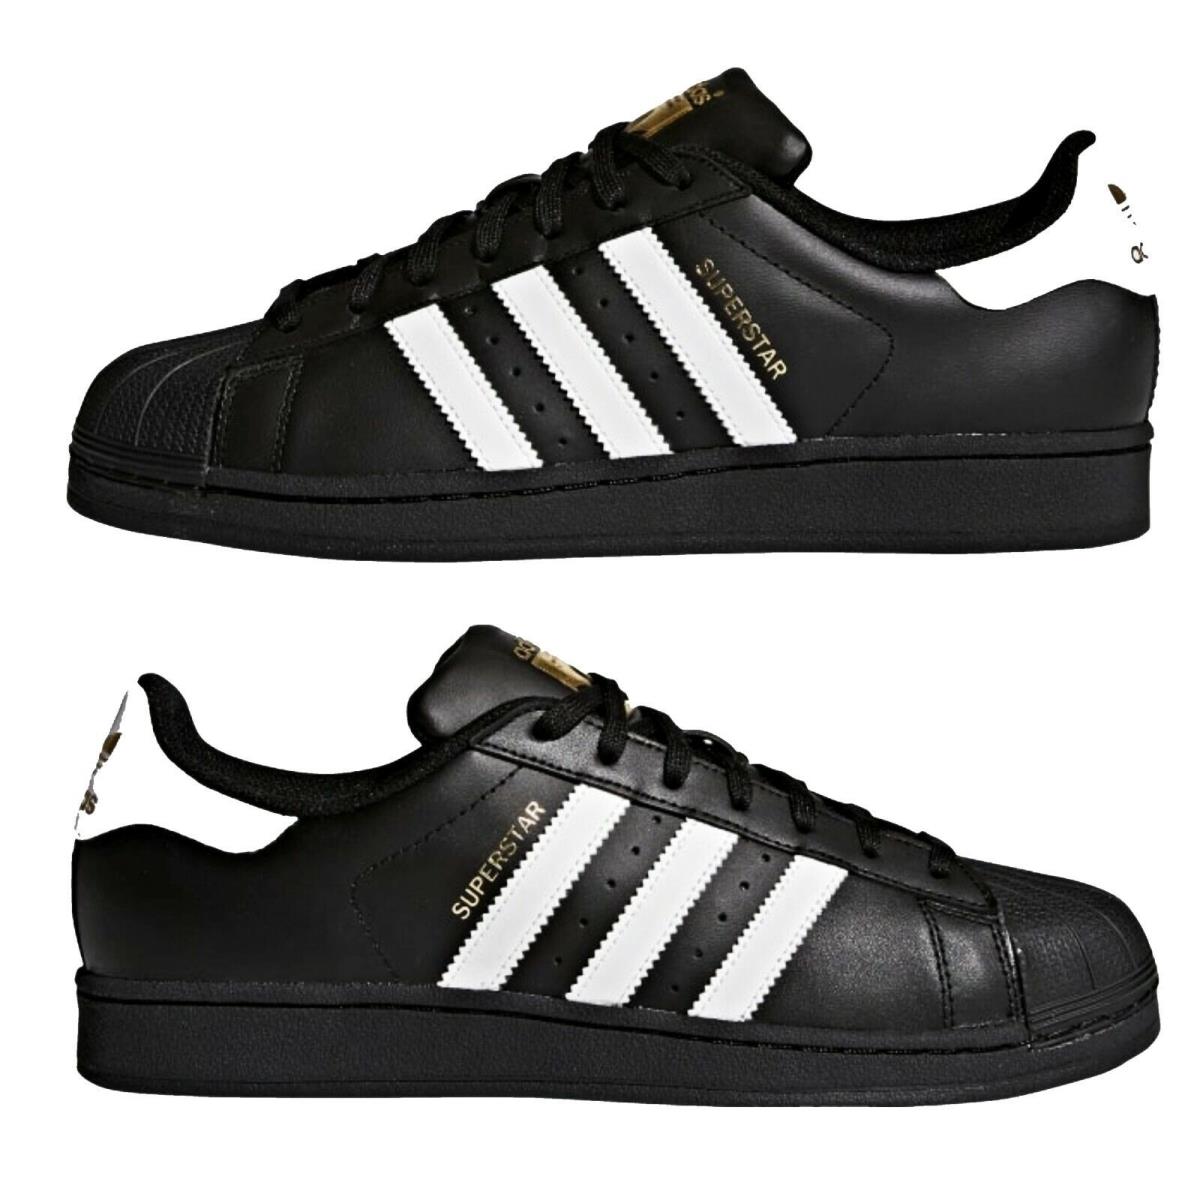 Adidas Originals Superstar Foundation Mens Shoes B27140 - Black/white - Black